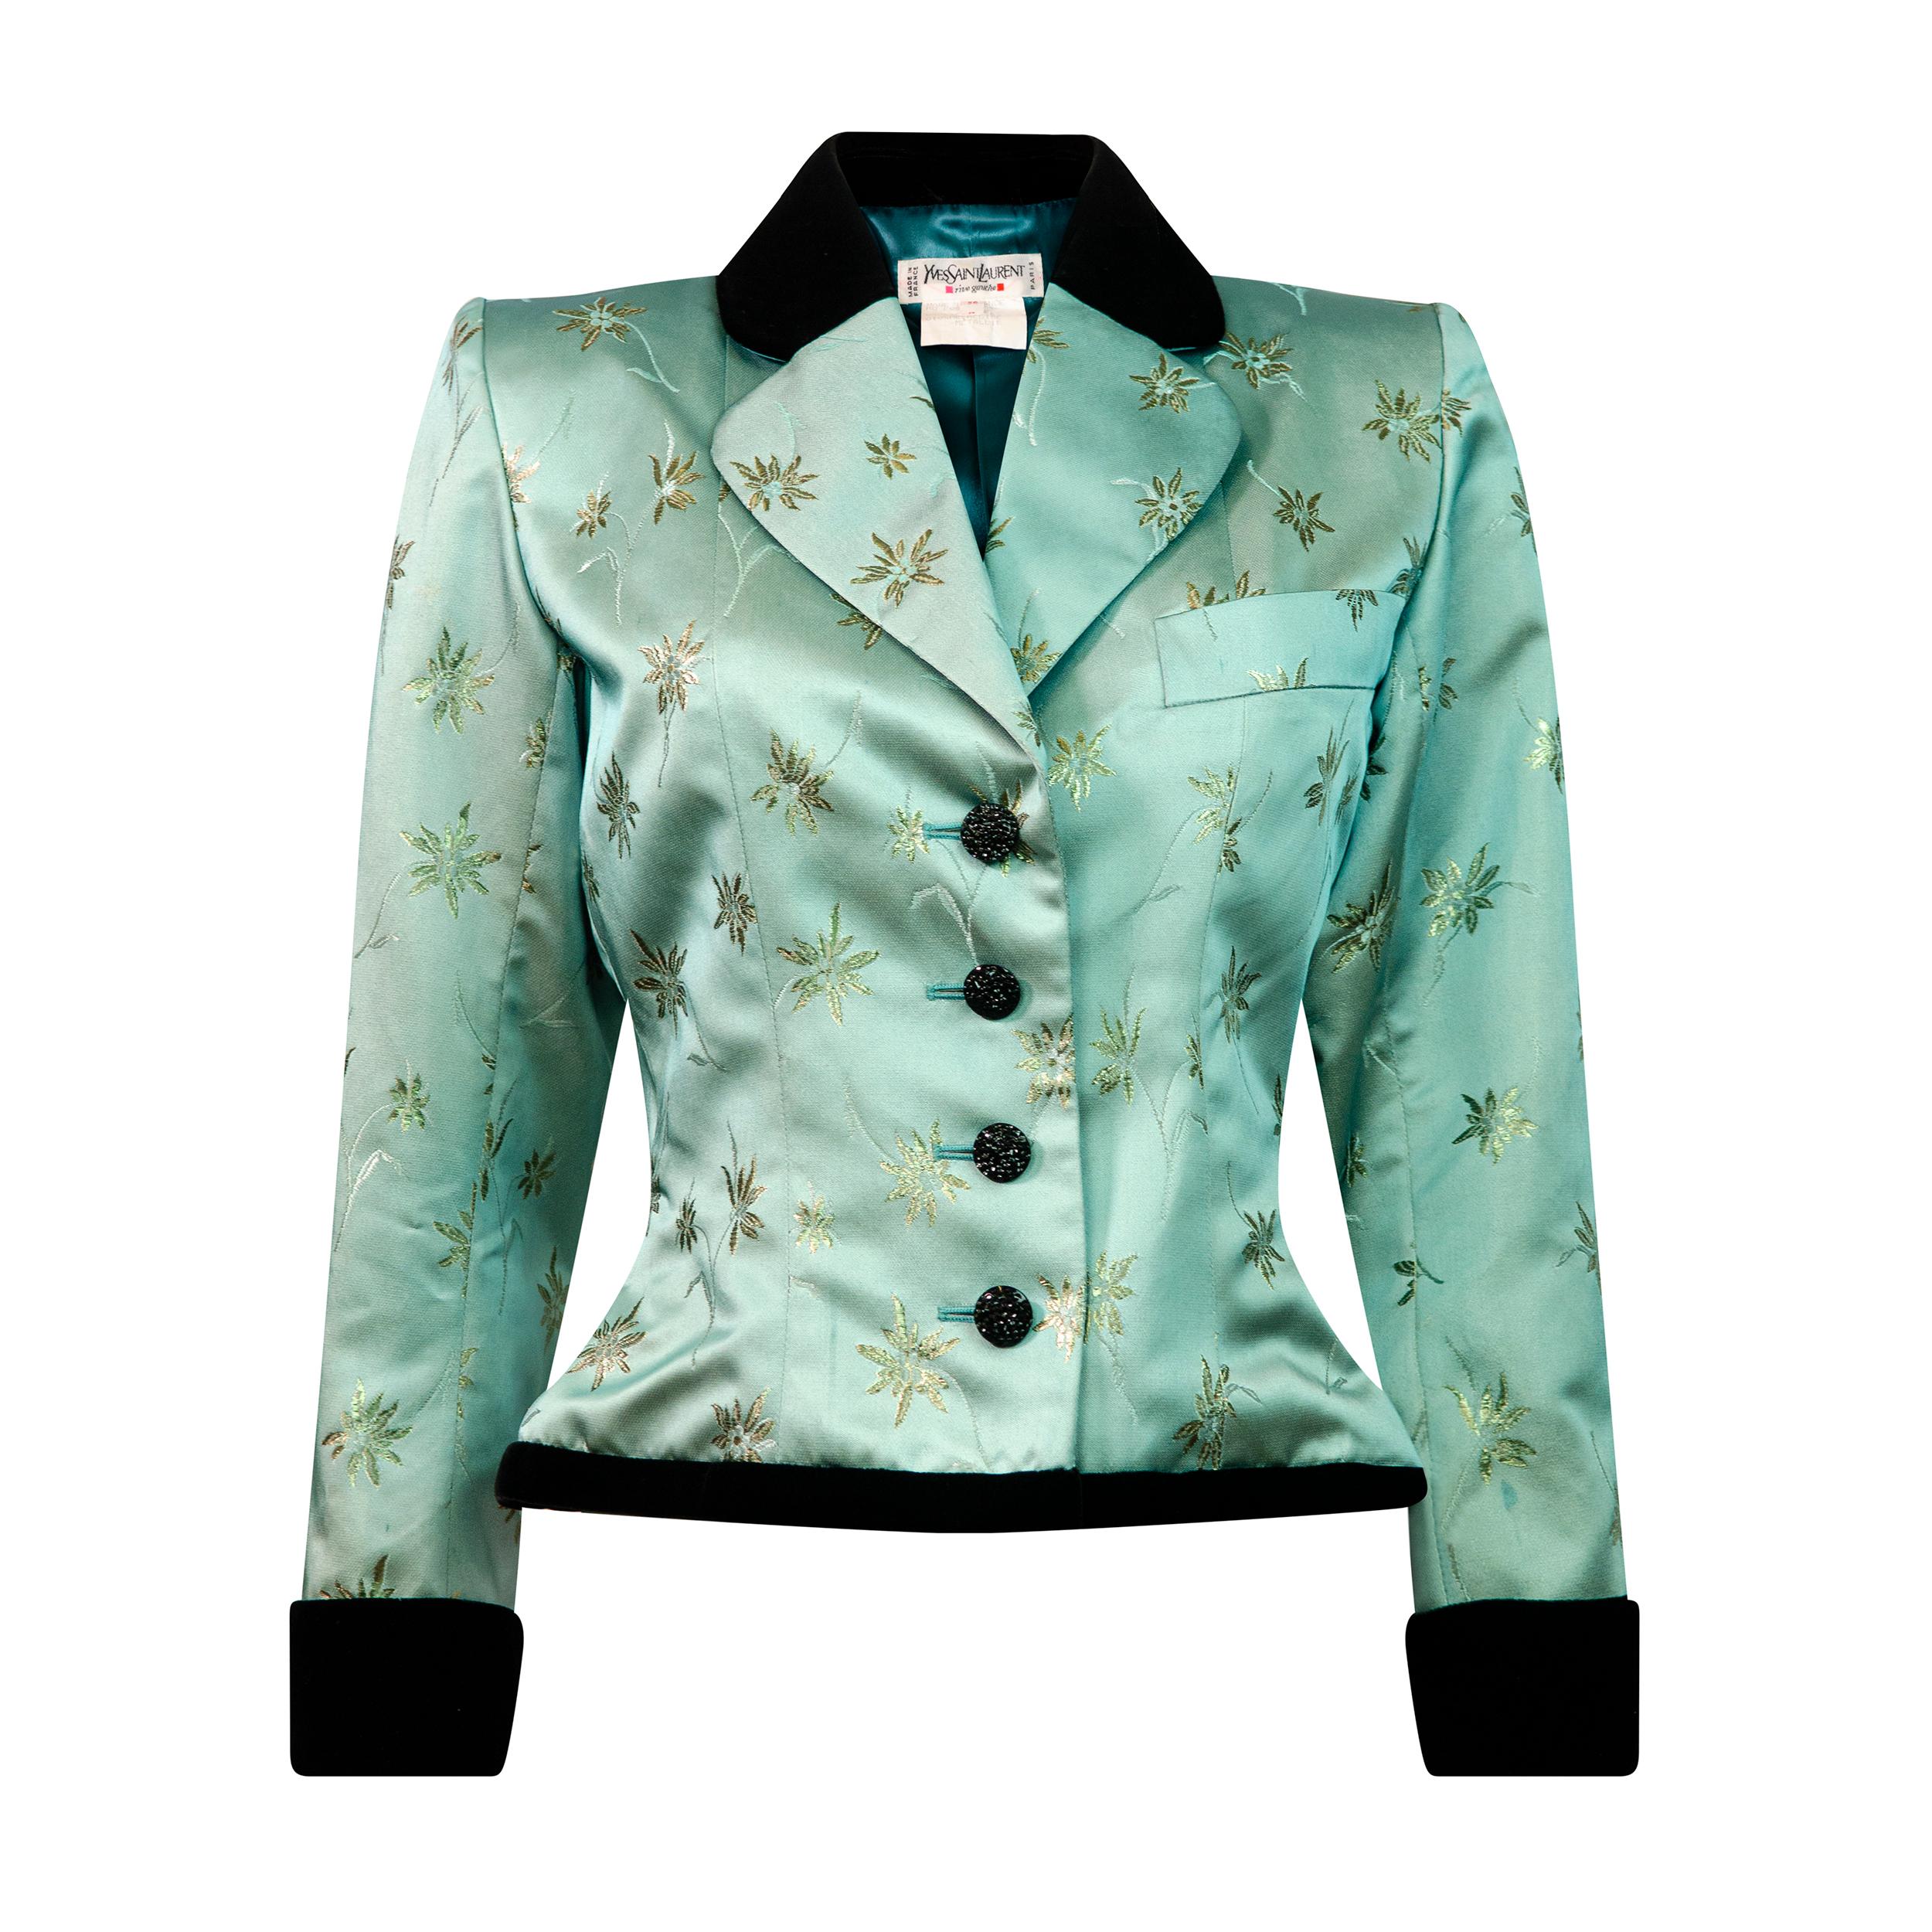 Yves Saint Laurent Rive Gauche Vintage 1990’s Green Floral Jacquard Jacket